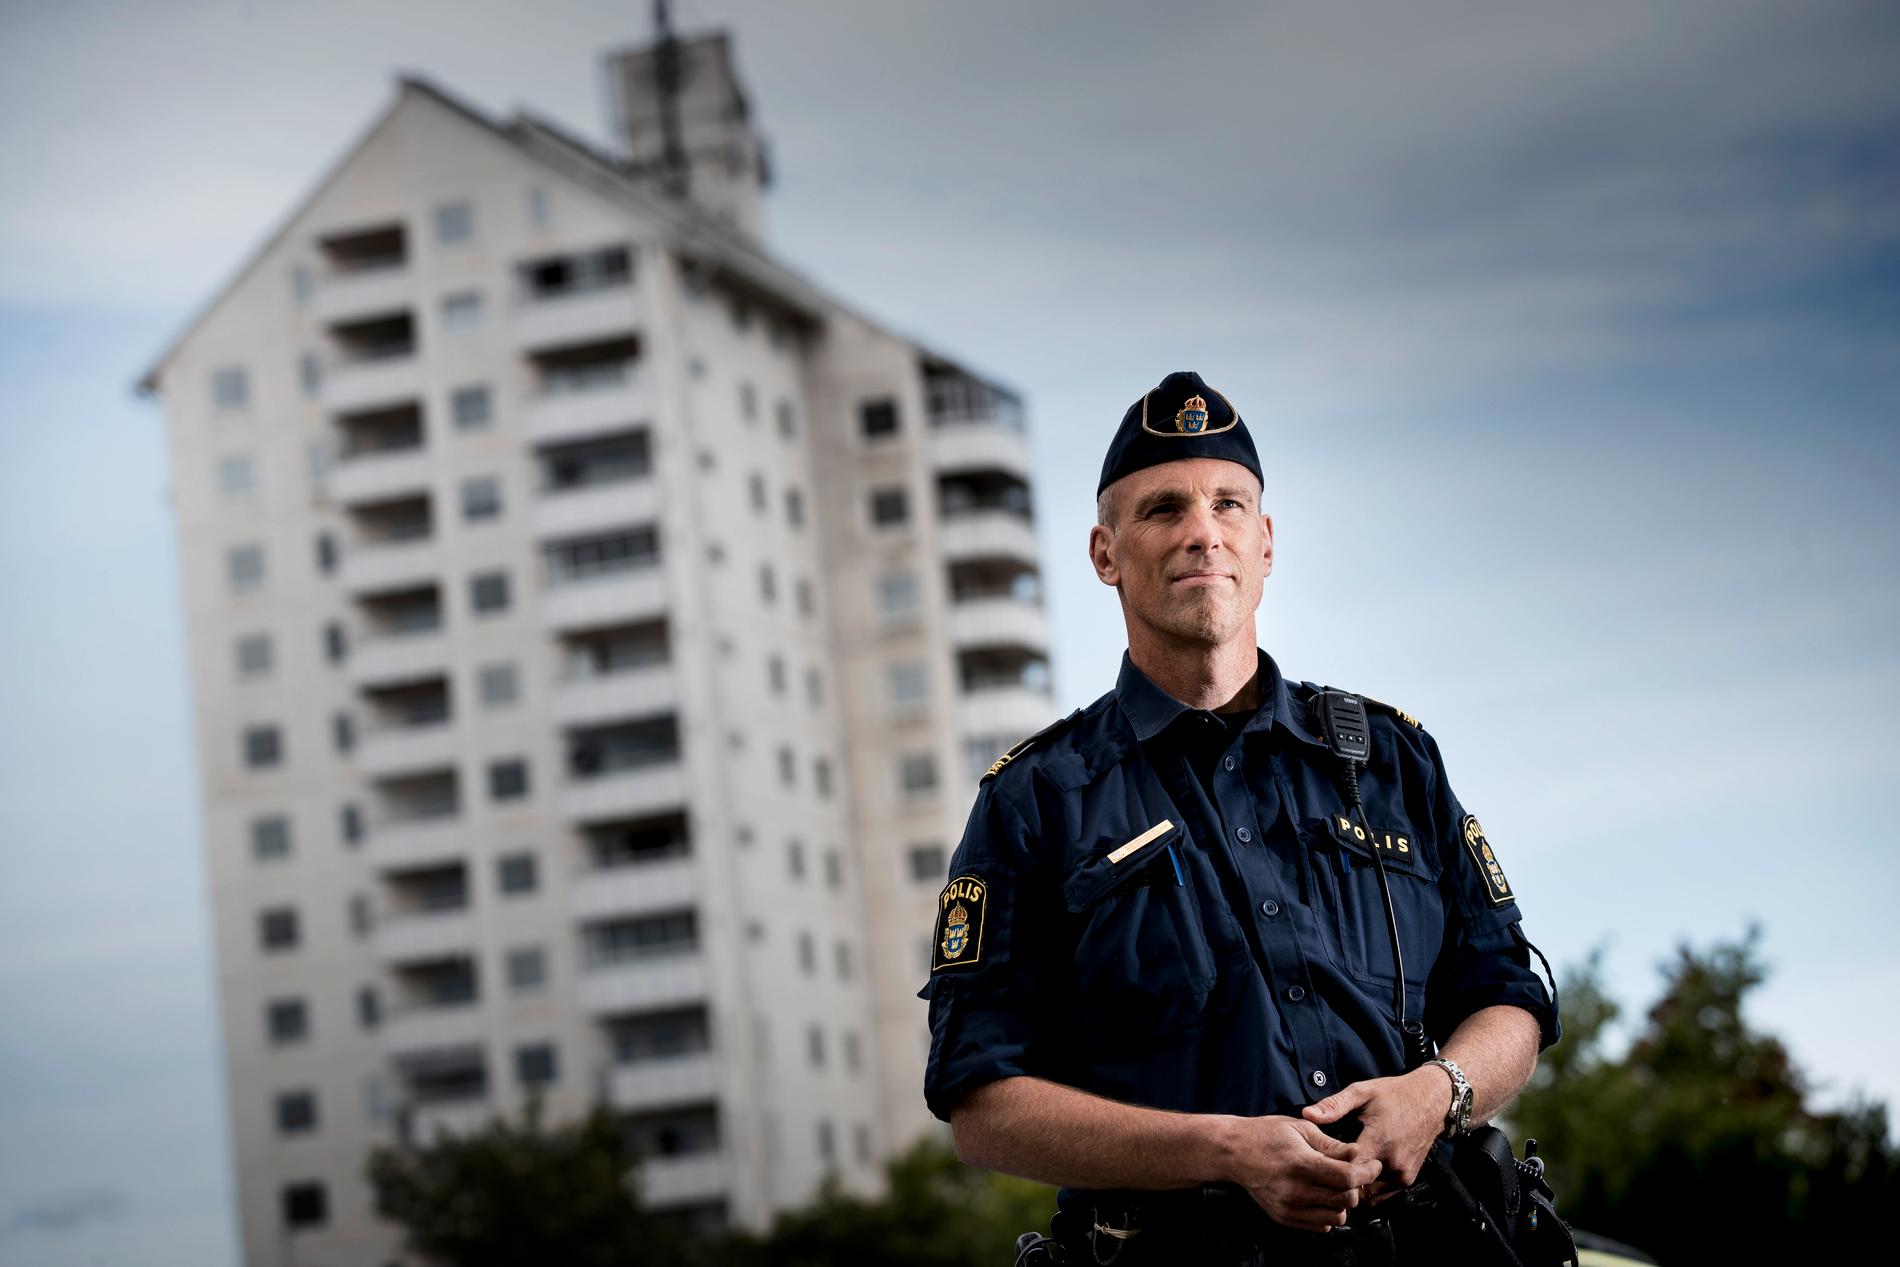 Många av dem som reste till IS levde redan innan ett liv i utanförskap, med arbetslöshet, missbruk och kriminalitet, och har återvänt till det. "De har i stort sett gått tillbaka till livet de lämnade", säger Fredrik Malm, polis i Vivalla i Örebro, varifrån ett tjugotal personer reste. Arkivbild.